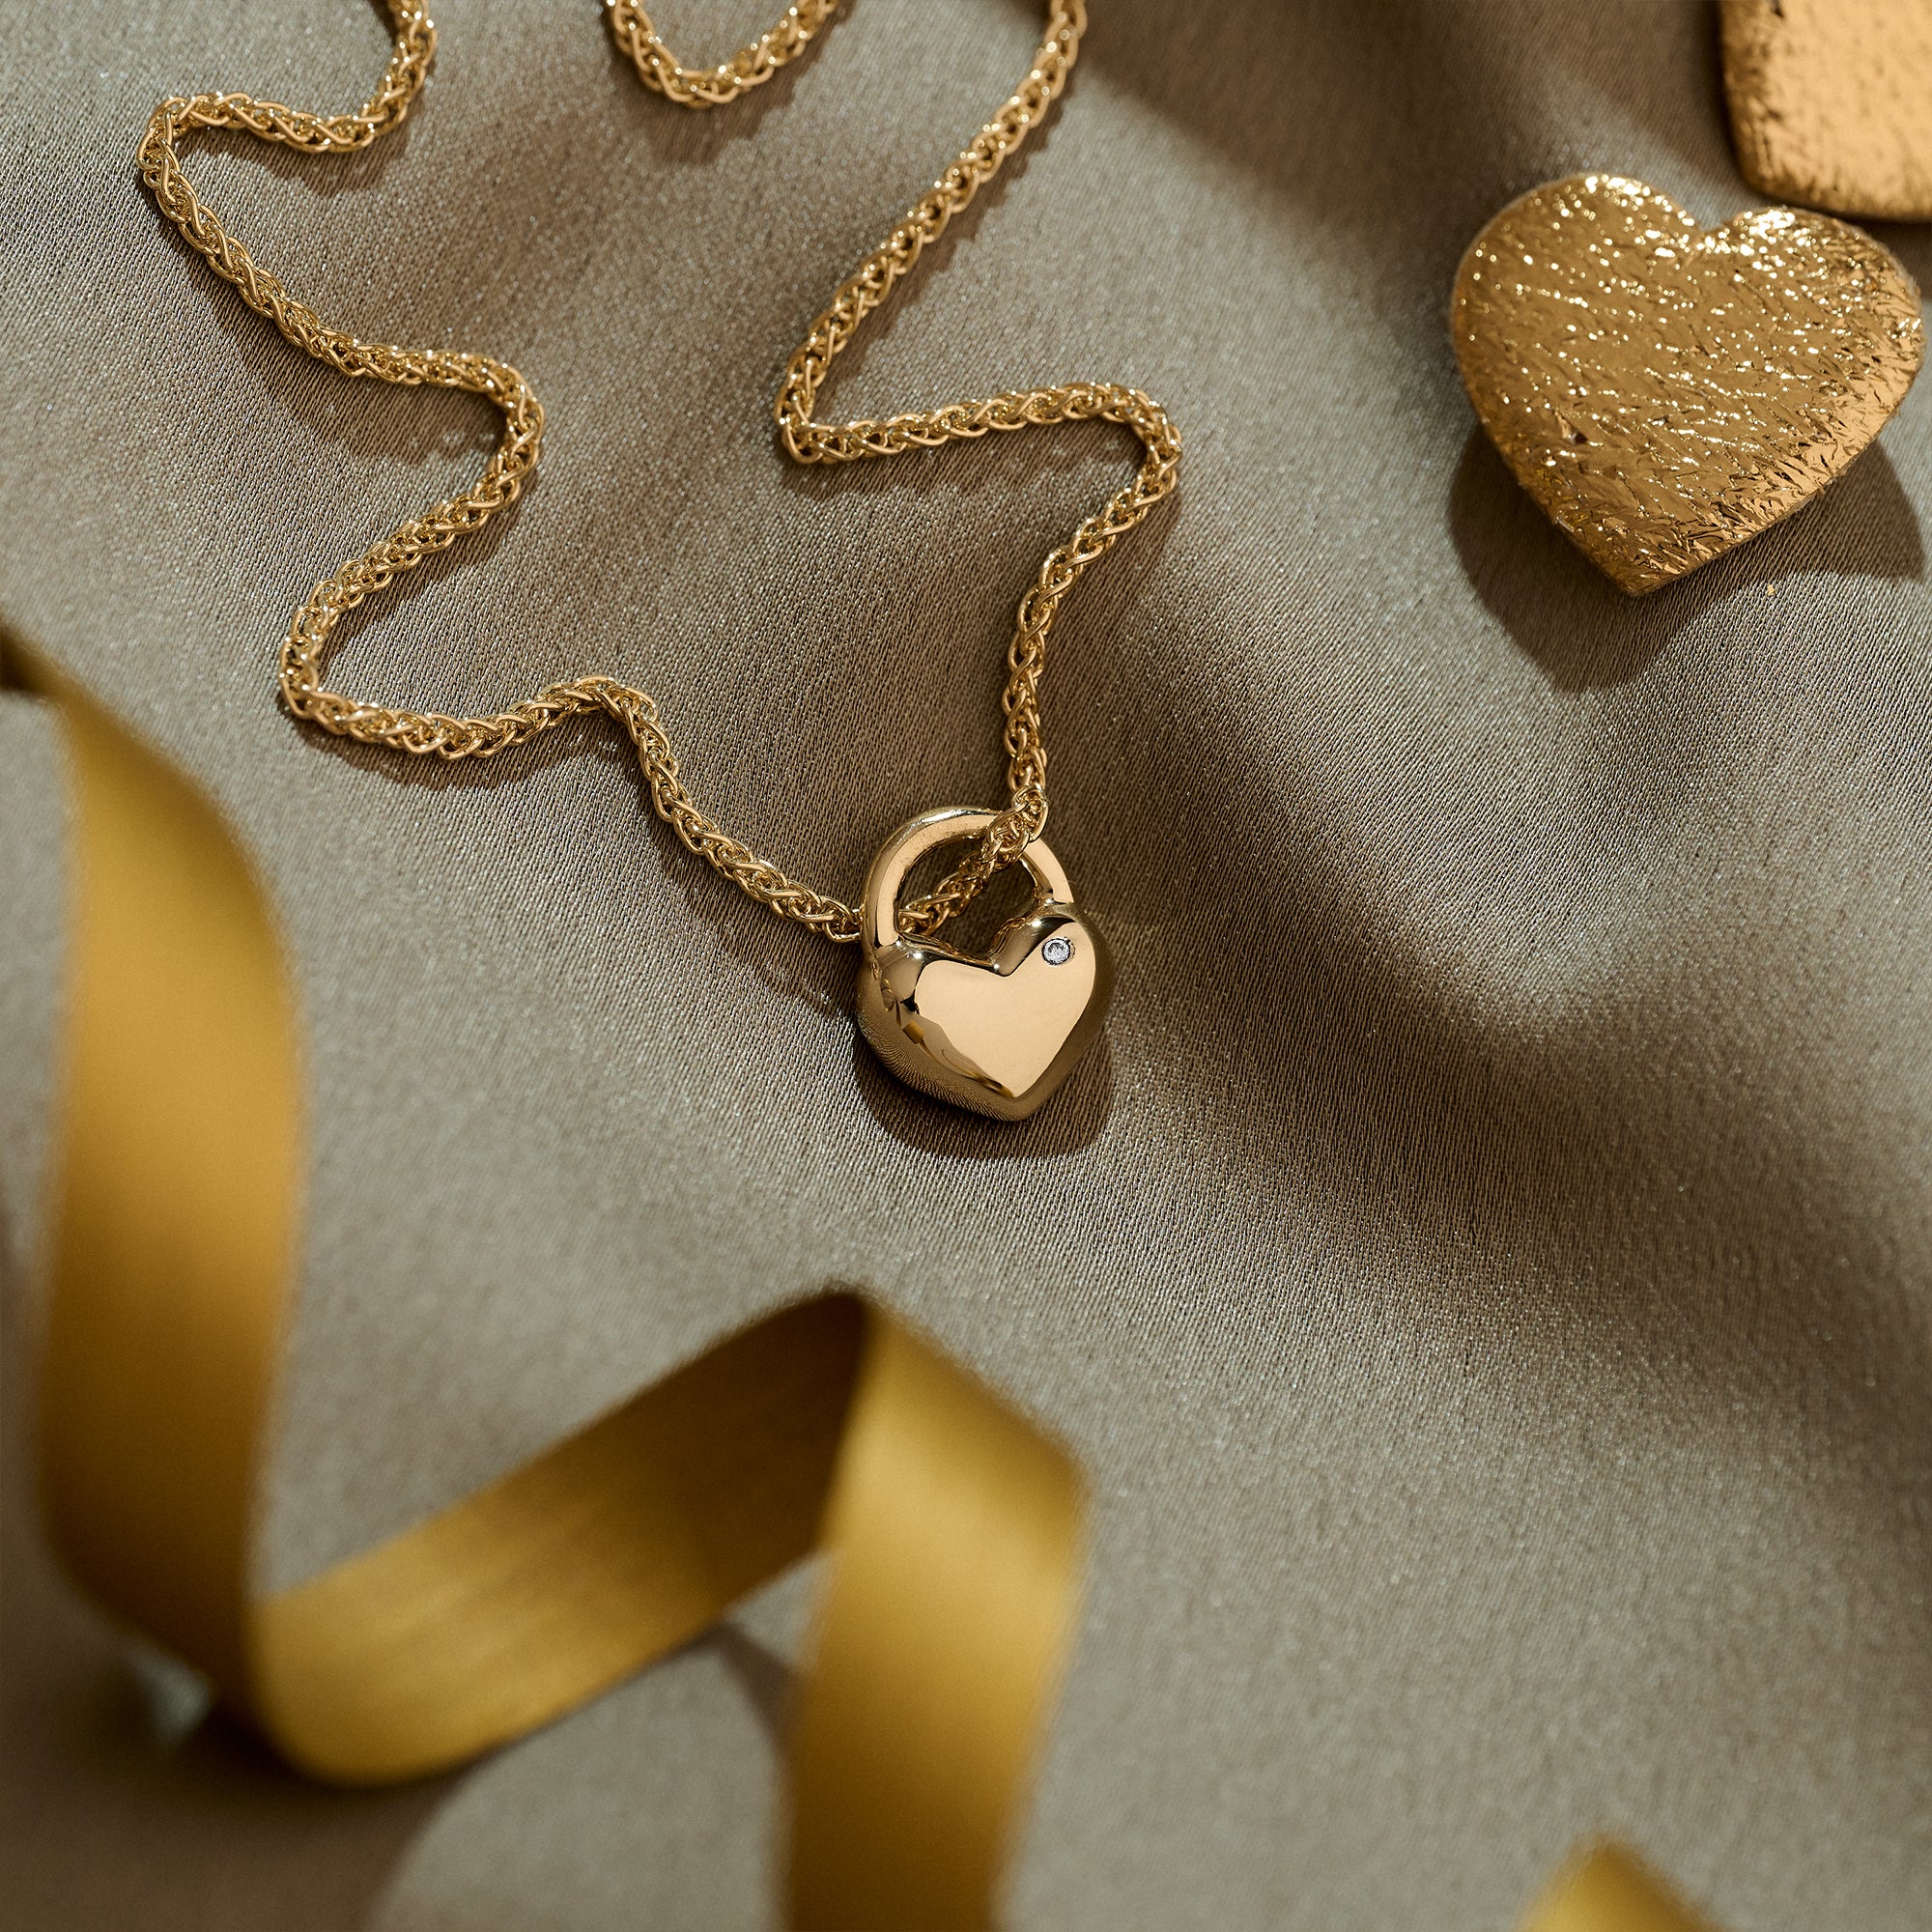 heavier gold spiga chain shown on our eternal heart pendant